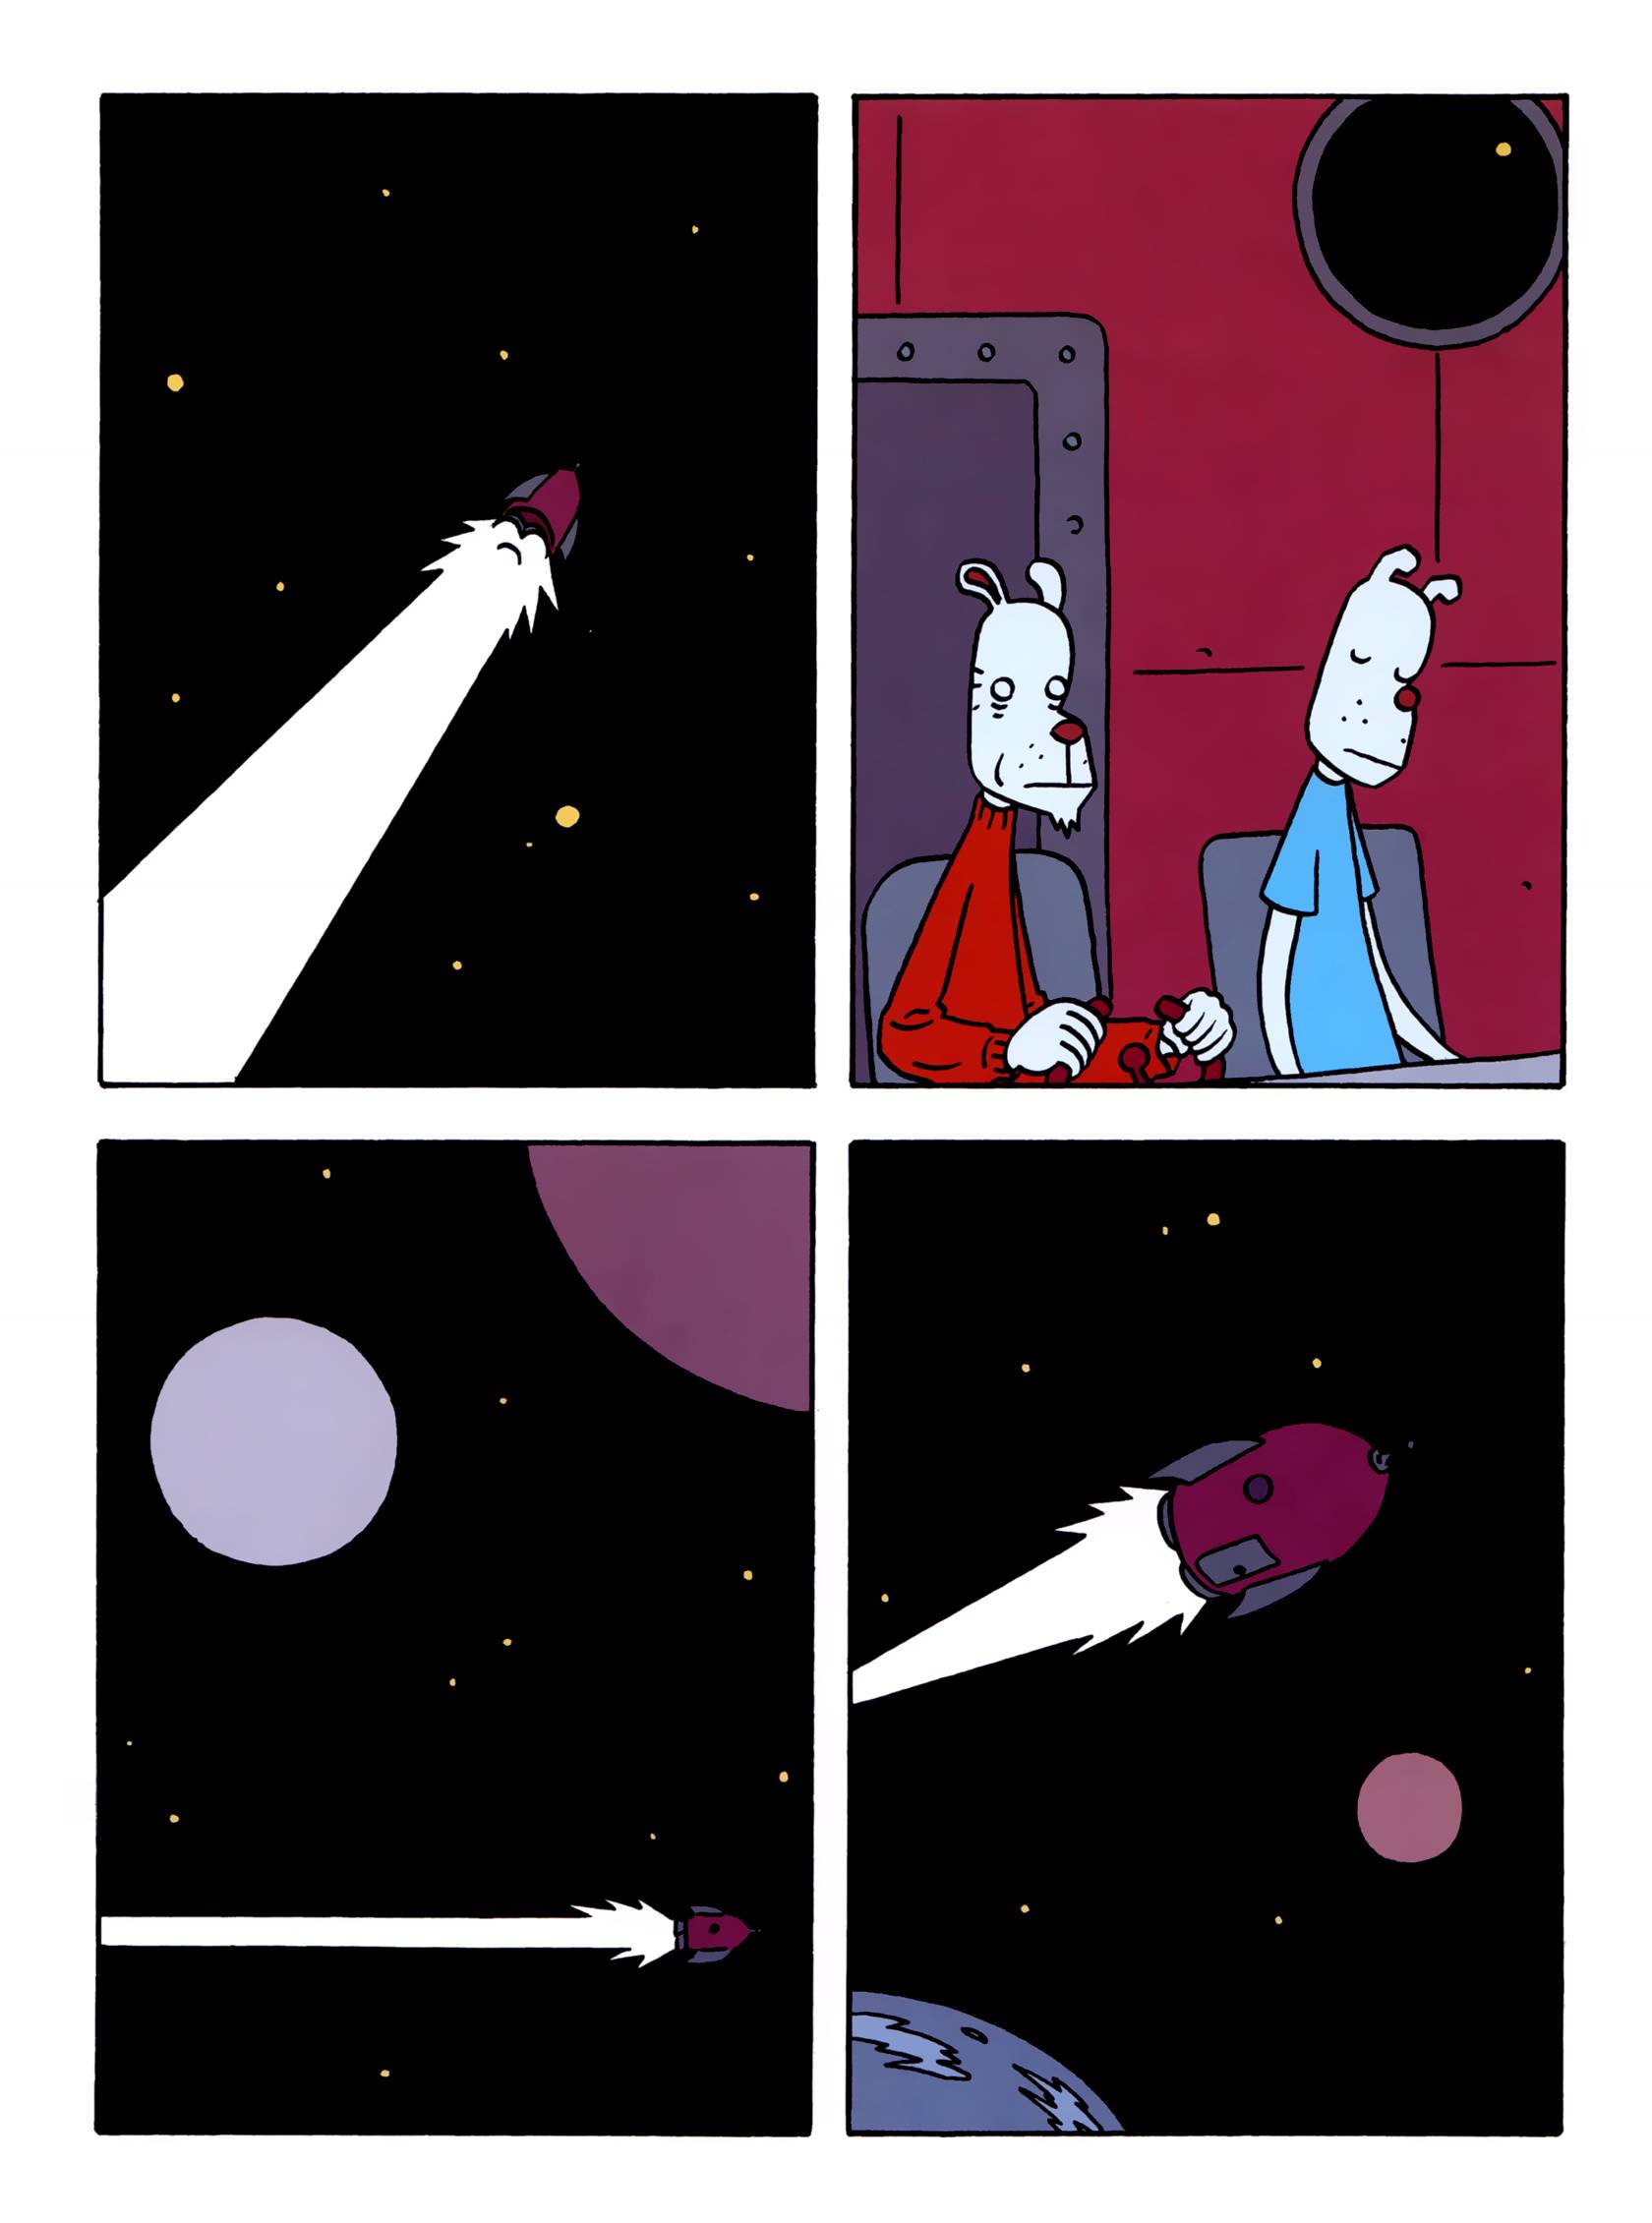 Читать комикс на луне